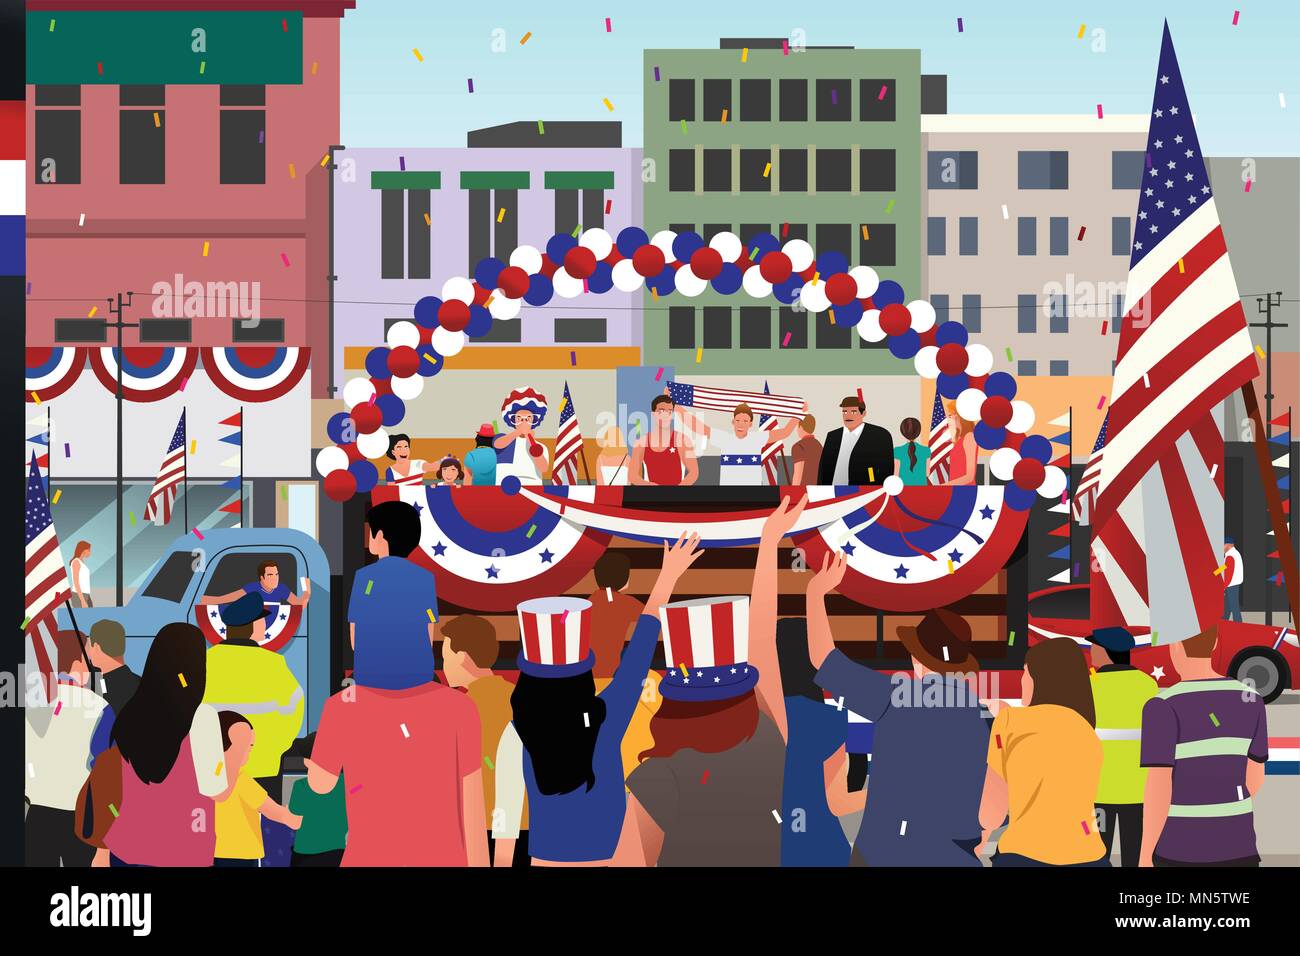 Un vecteur illustration de personnes célébrant la Parade du 4 juillet Illustration de Vecteur